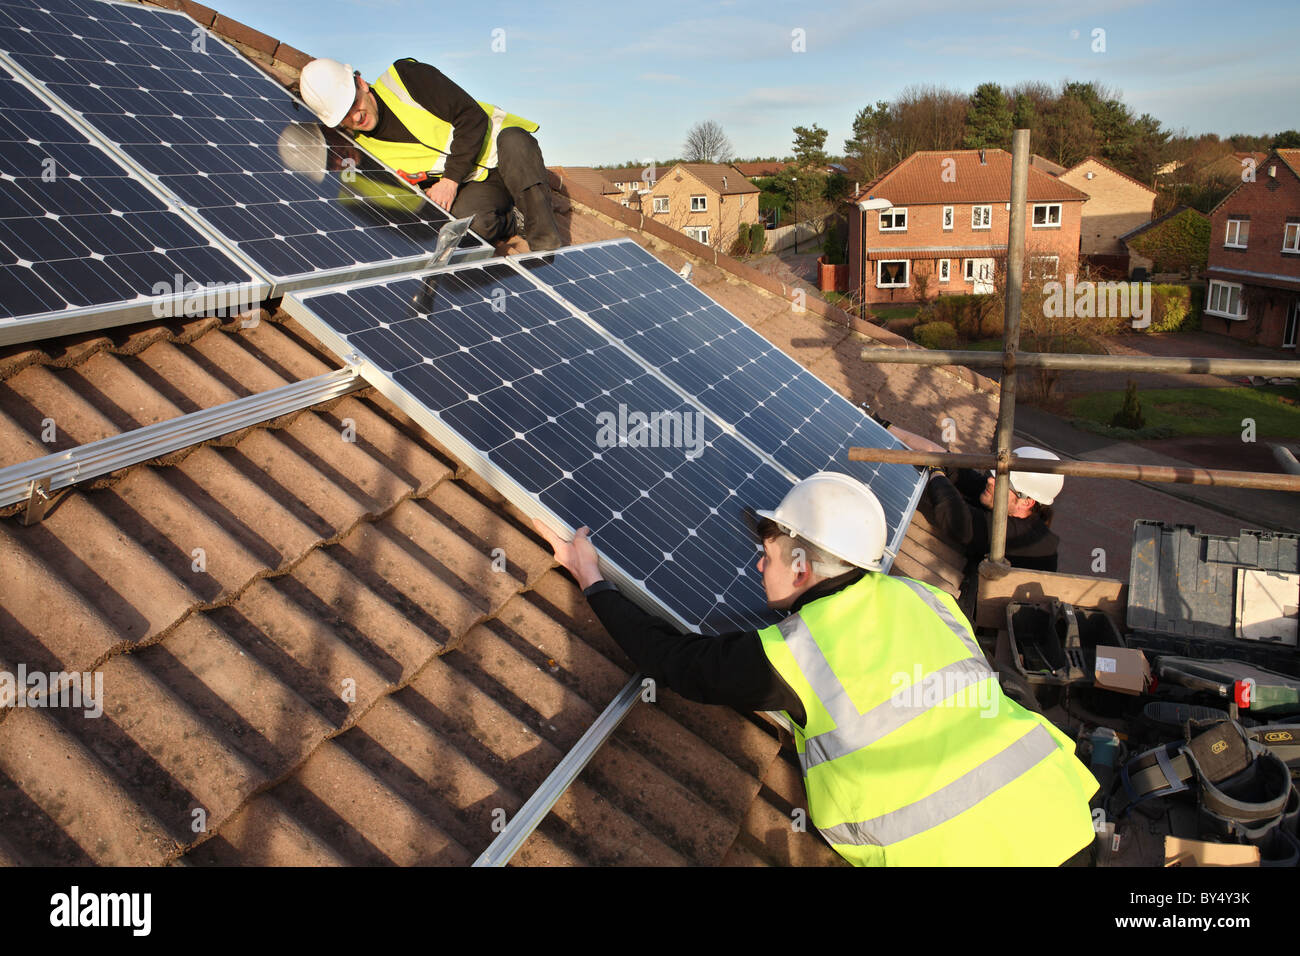 L'installation de panneaux solaires photovoltaïques sur le toit d'une maison à l'intérieur de Washington, au nord-est de l'Angleterre, Royaume-Uni Banque D'Images